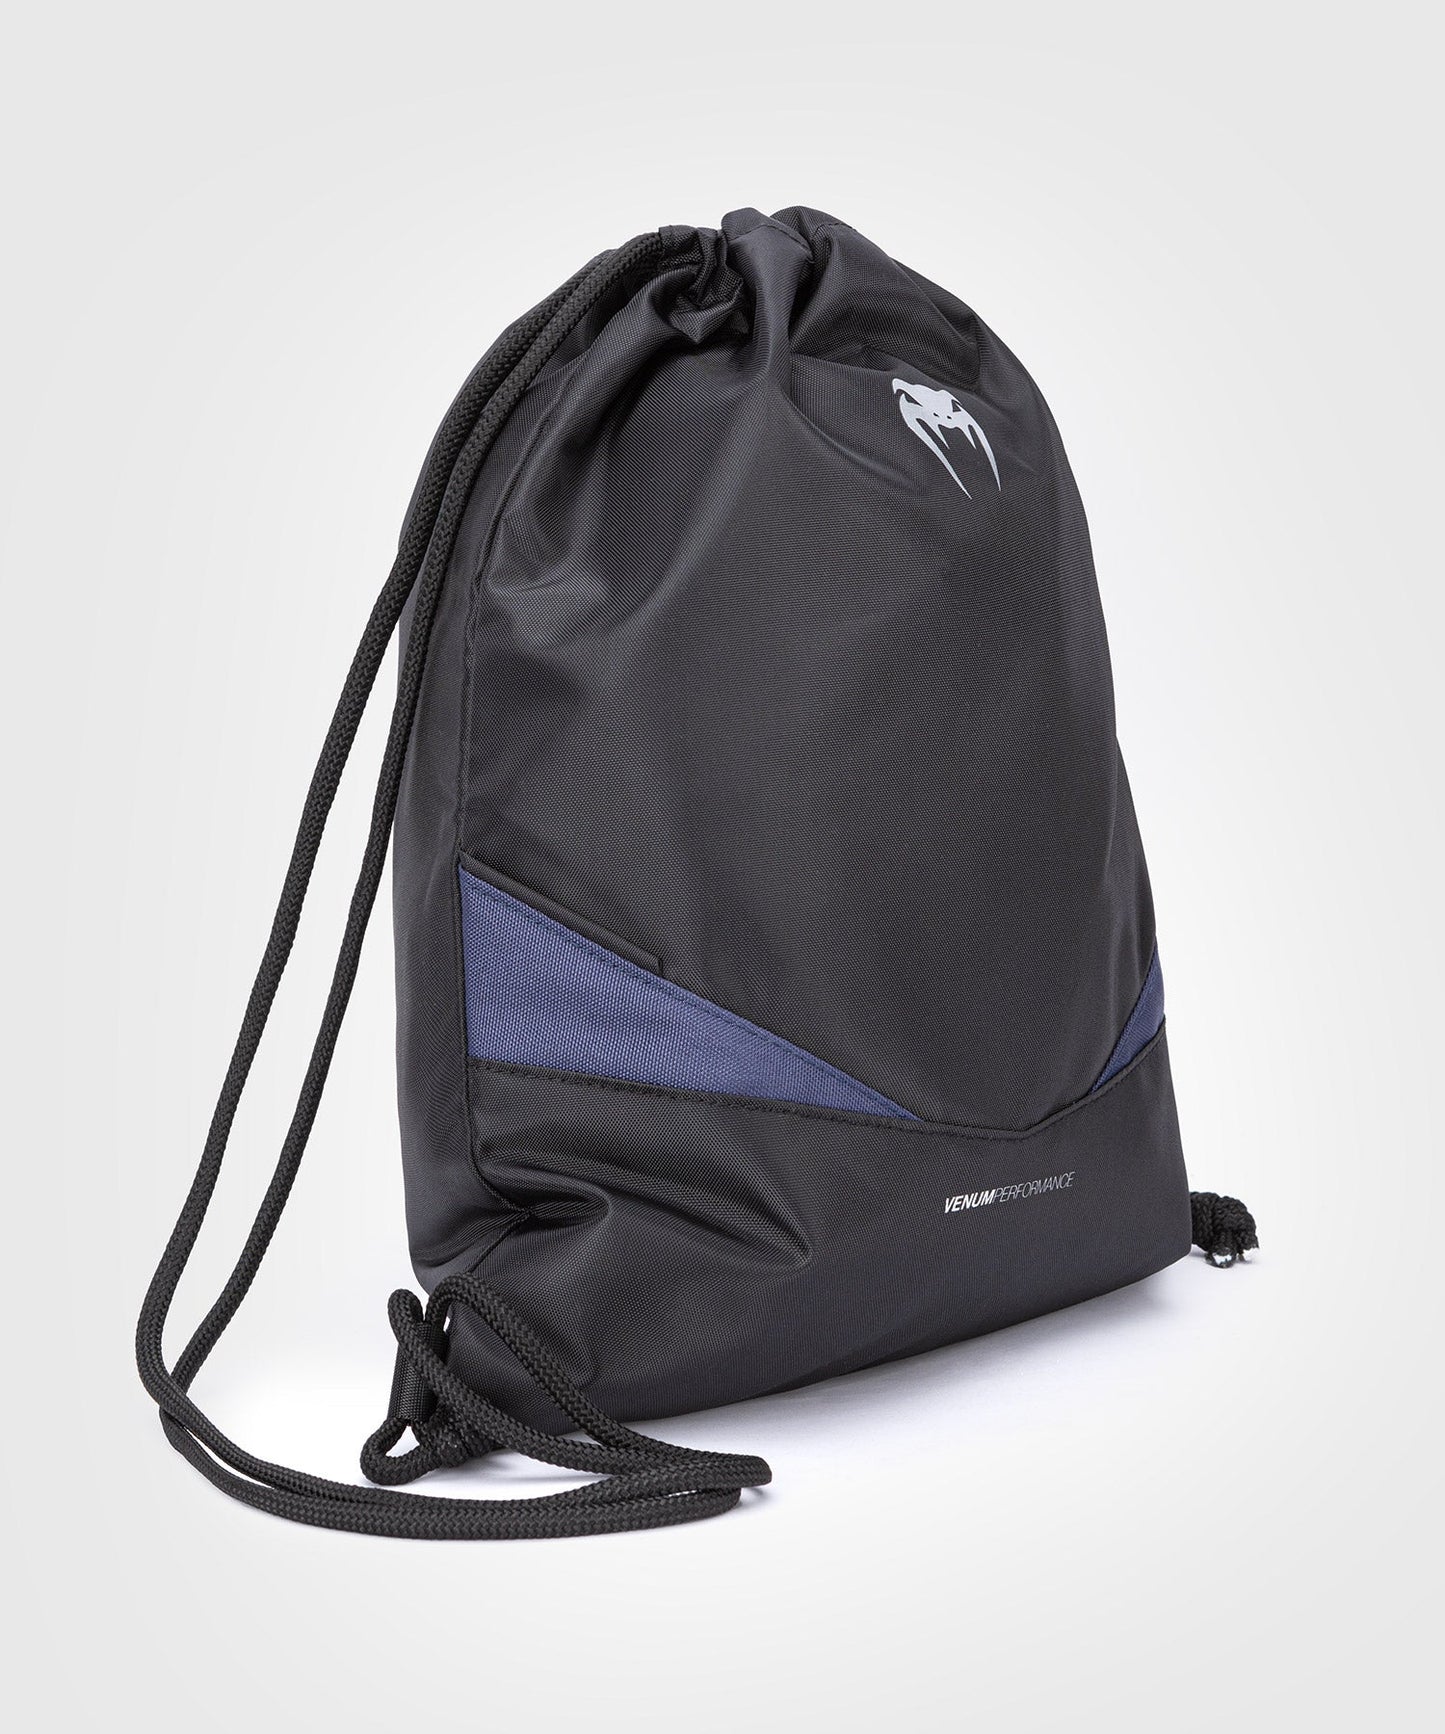 Venum Evo 2 Drawstring Bag - Black/Blue